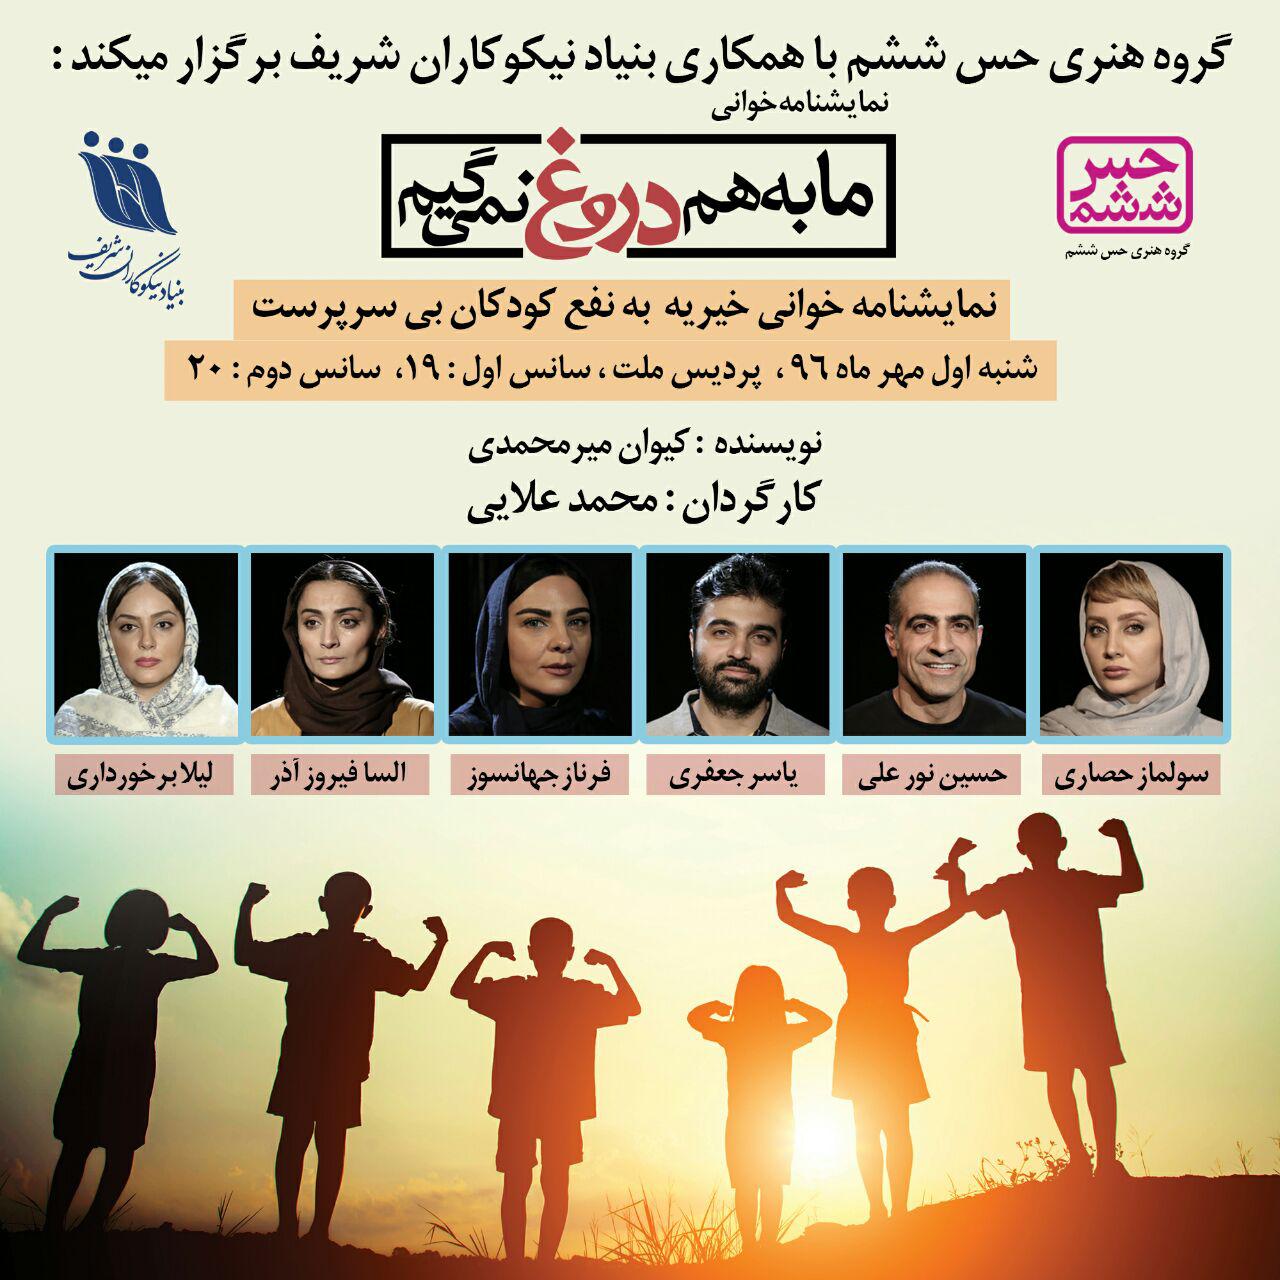 رویداد نمایشنامه خوانی به نفع ایتام و زنان سرپرست خانوار بنیاد نیکوکاران شریف